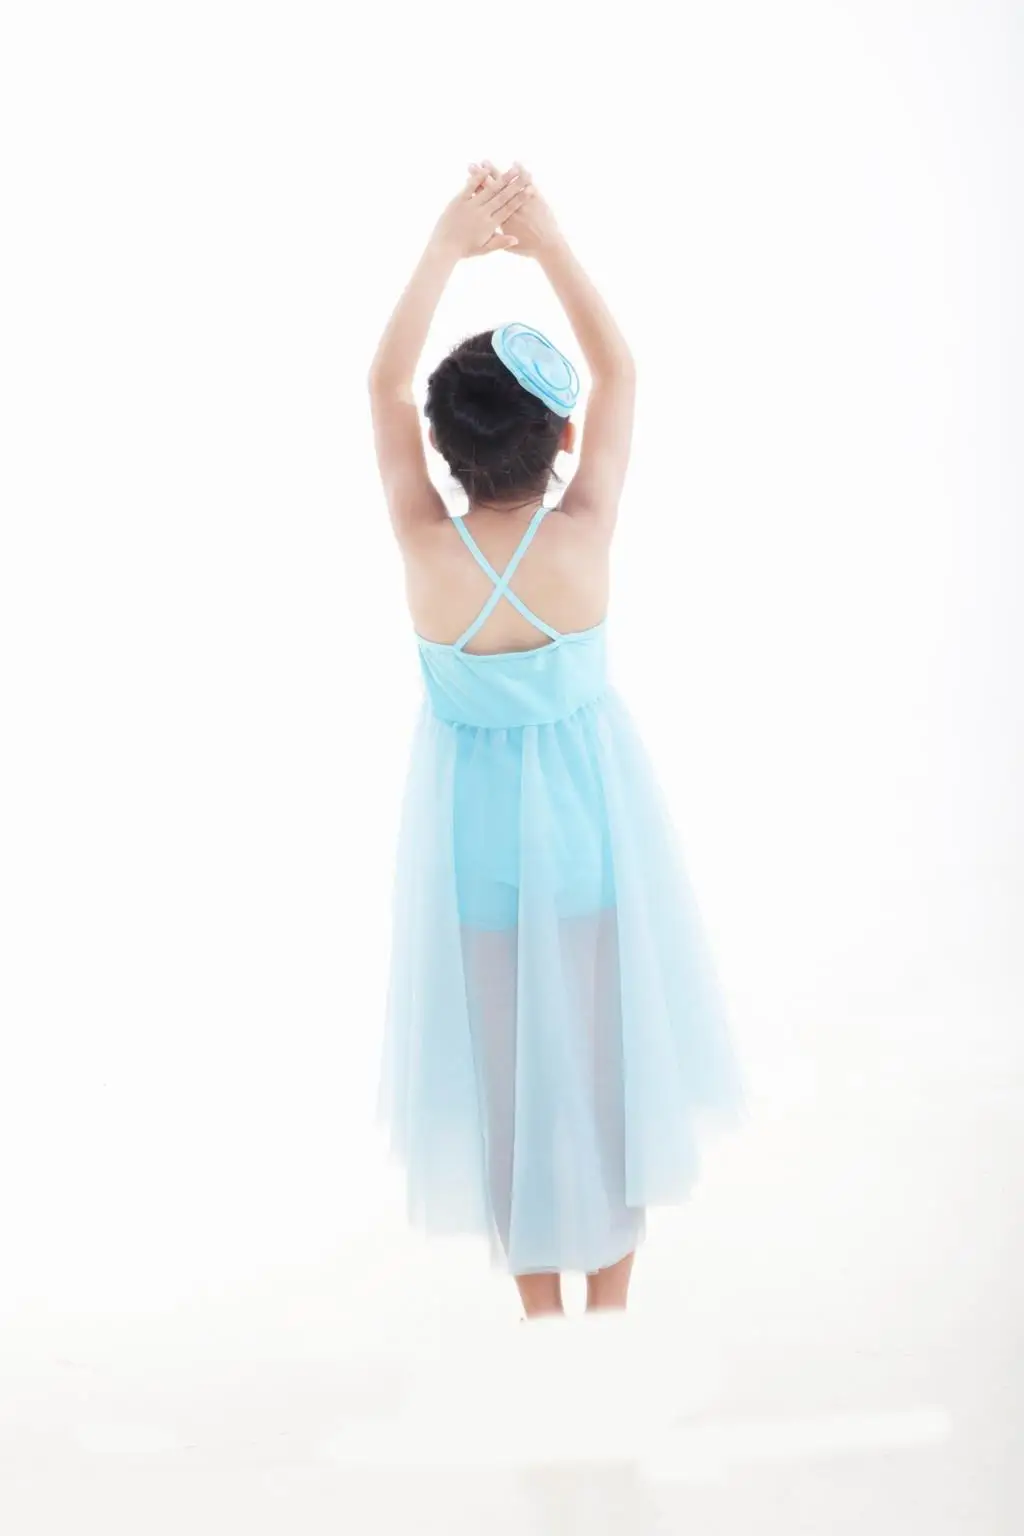 Justaucorps трико детская одежда для выступлений балетное платье-пачка для классического танцевального Костюма Свадебные костюмы профессиональные